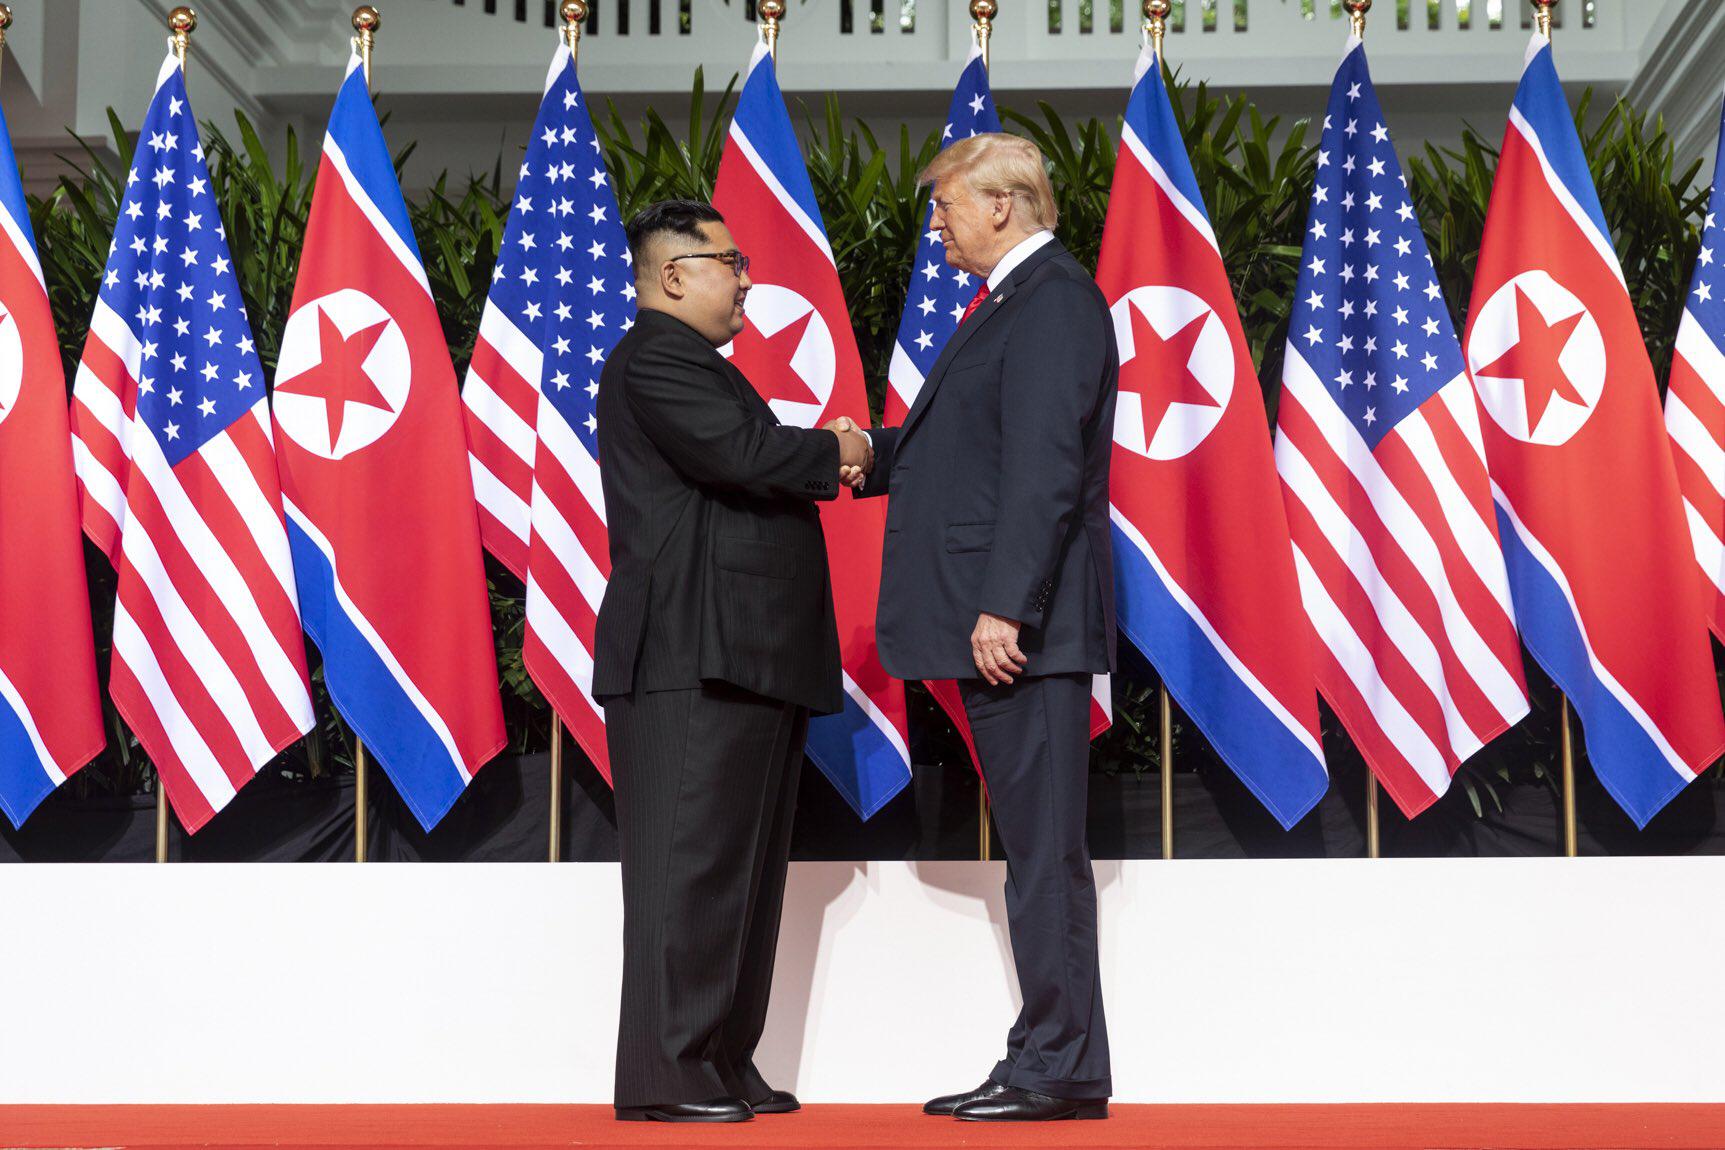 الرئيس الأميركي دونالد ترامب في لقائه السابق بالزعيم الكوري الشمالي كيم جونغ أون